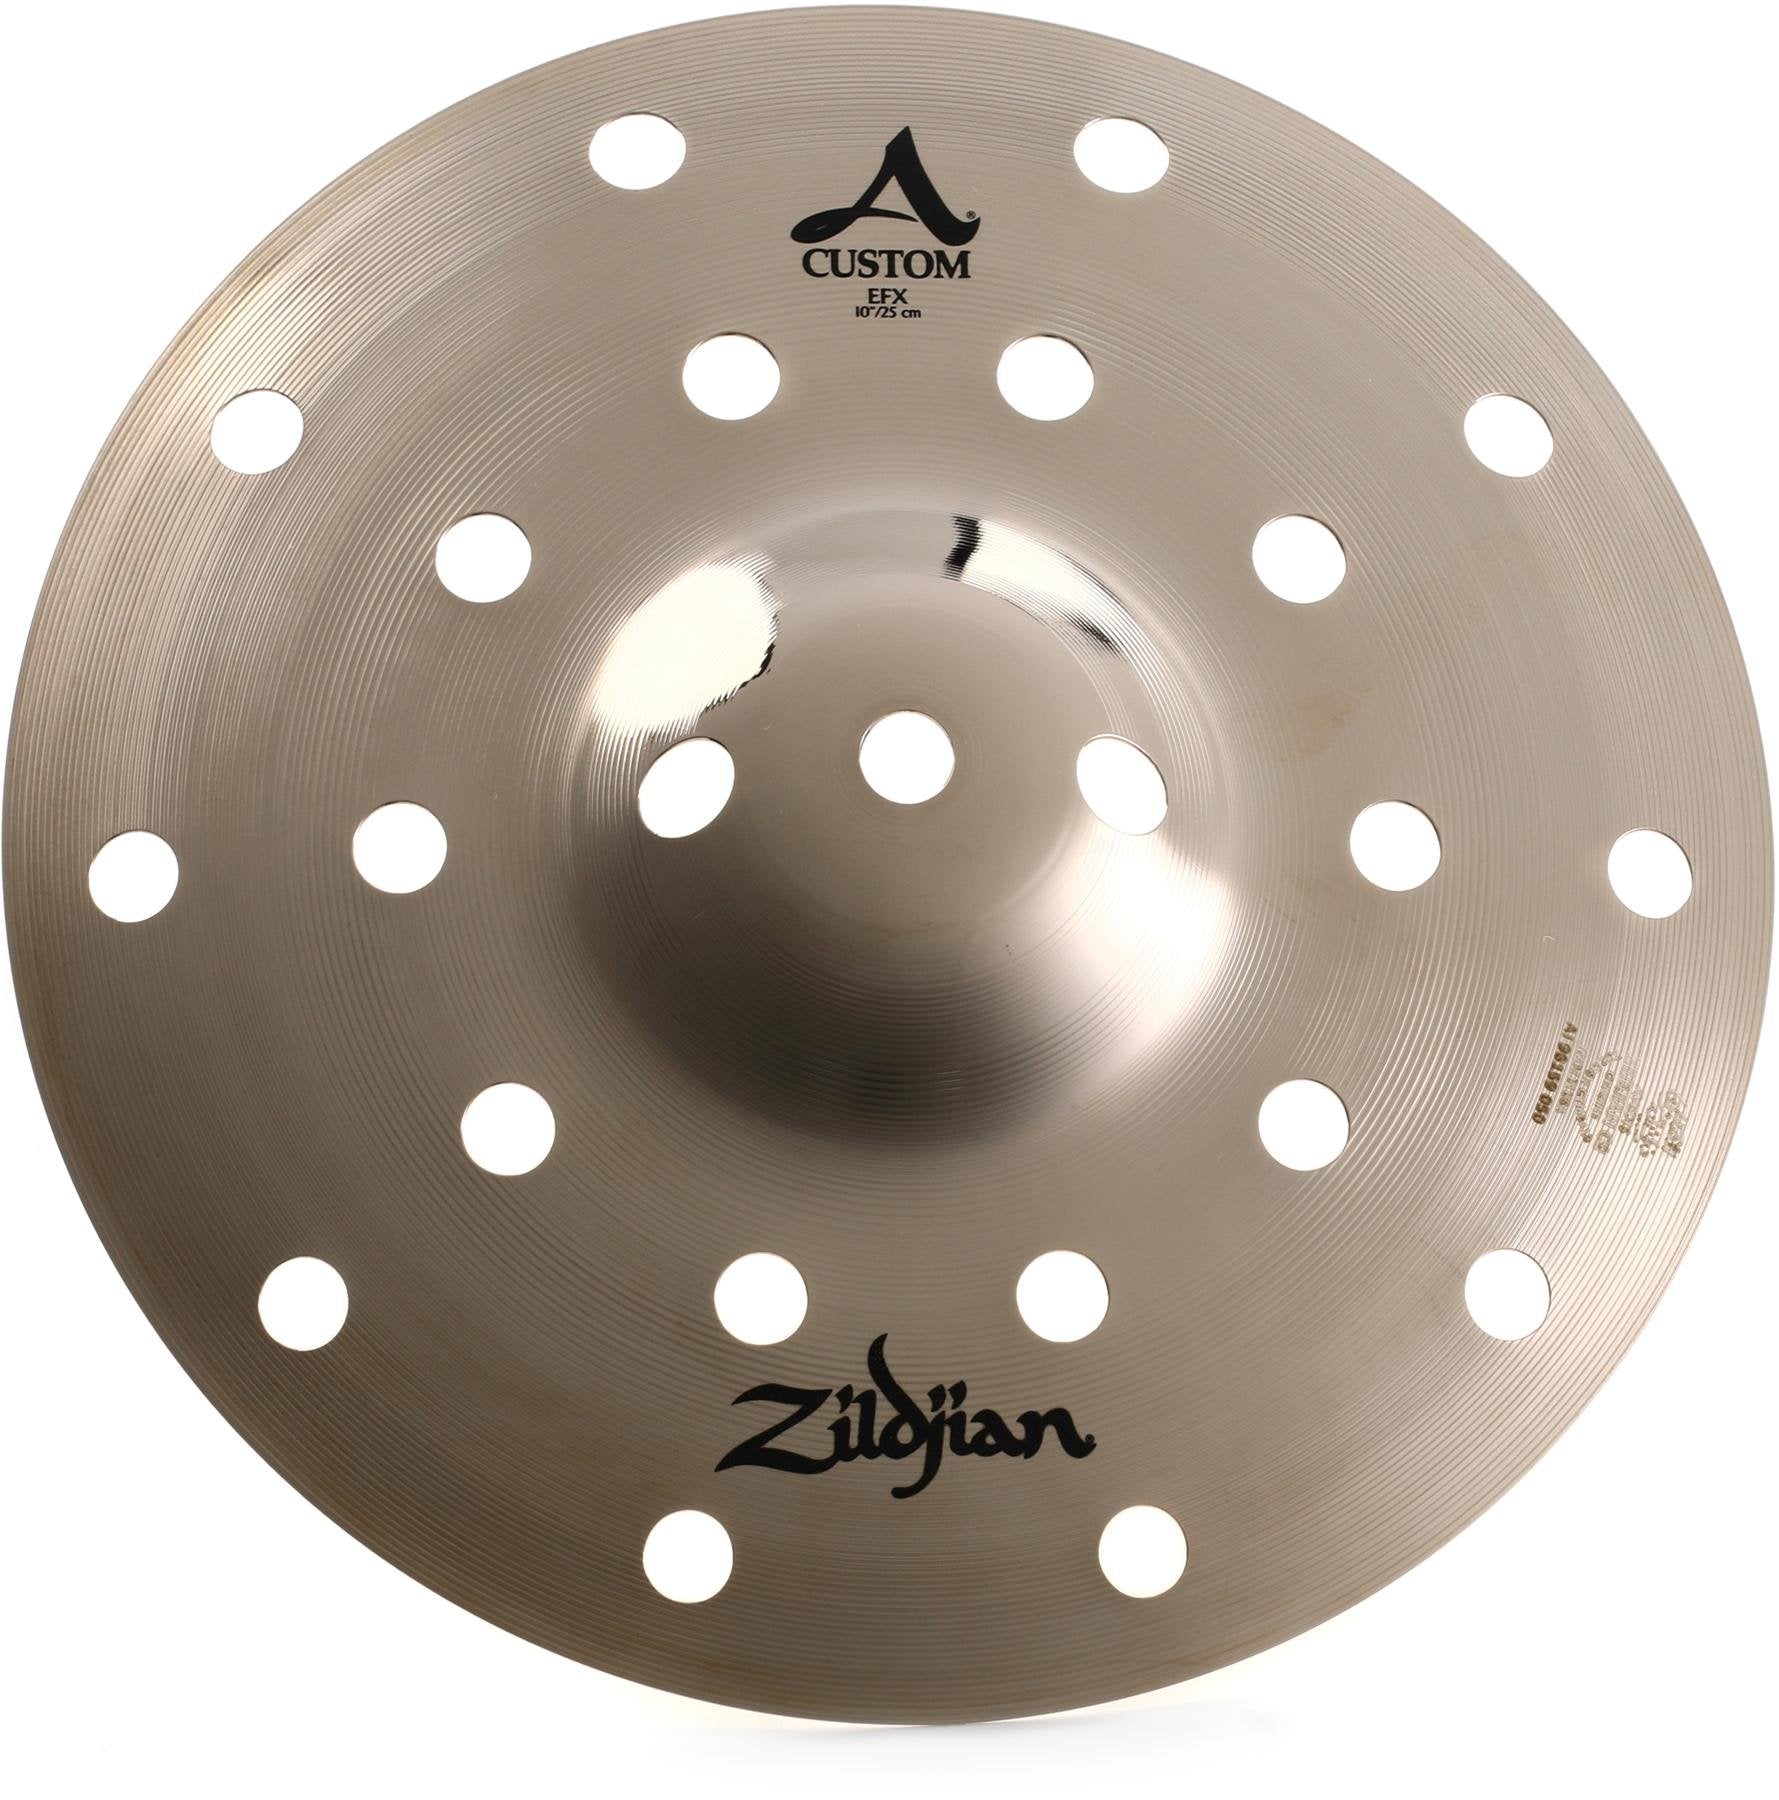 ZILDJIAN 10" A Custom EFX Splash Cymbal